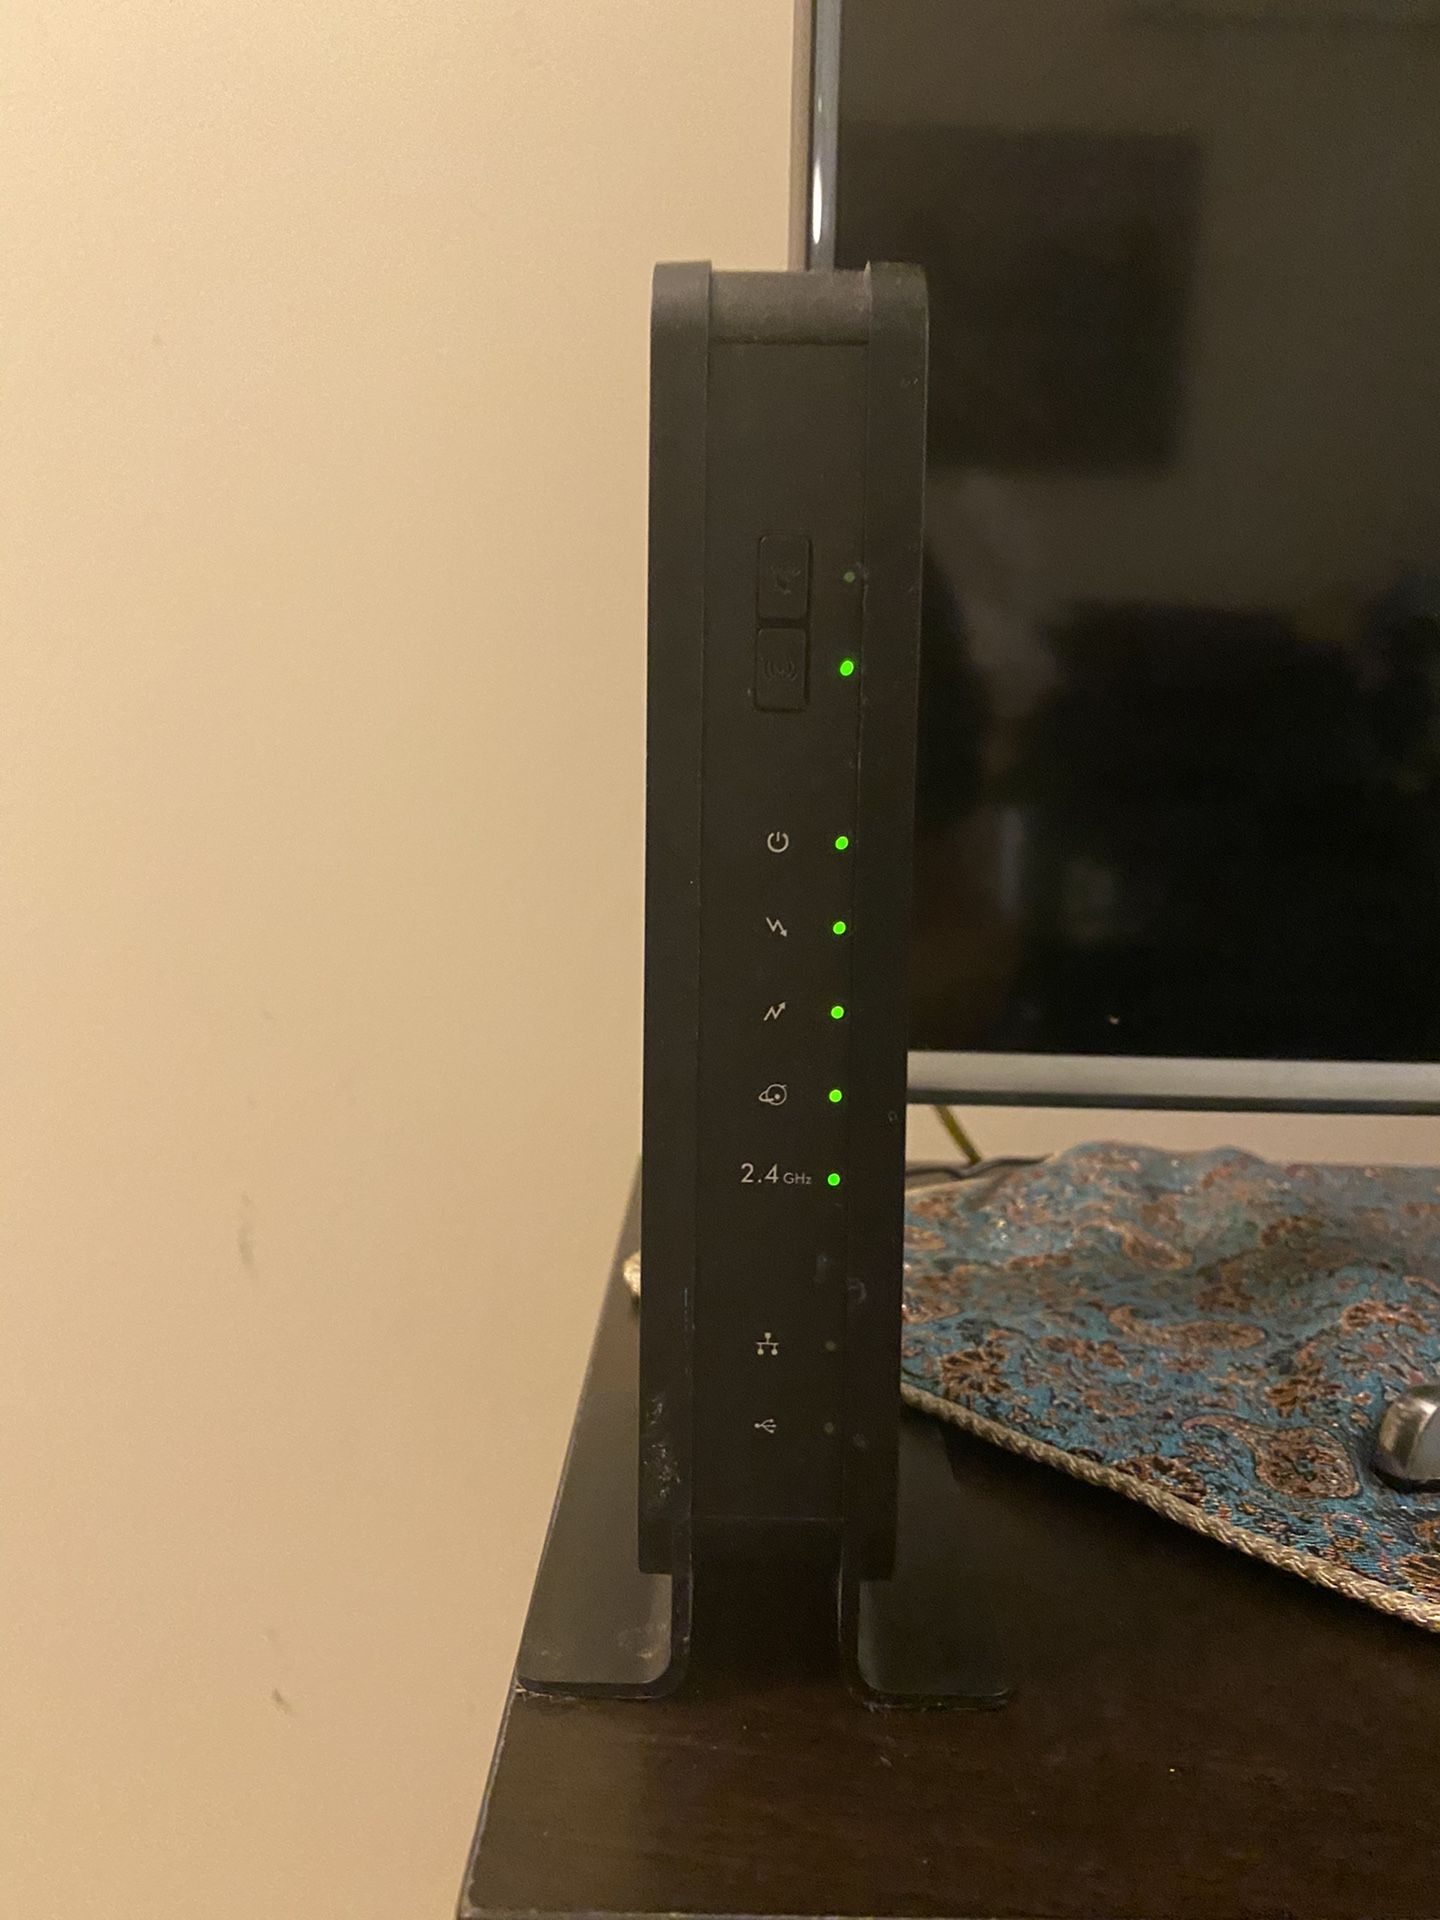 NETGEAR C3000 Cablem Modem /Wifi Router